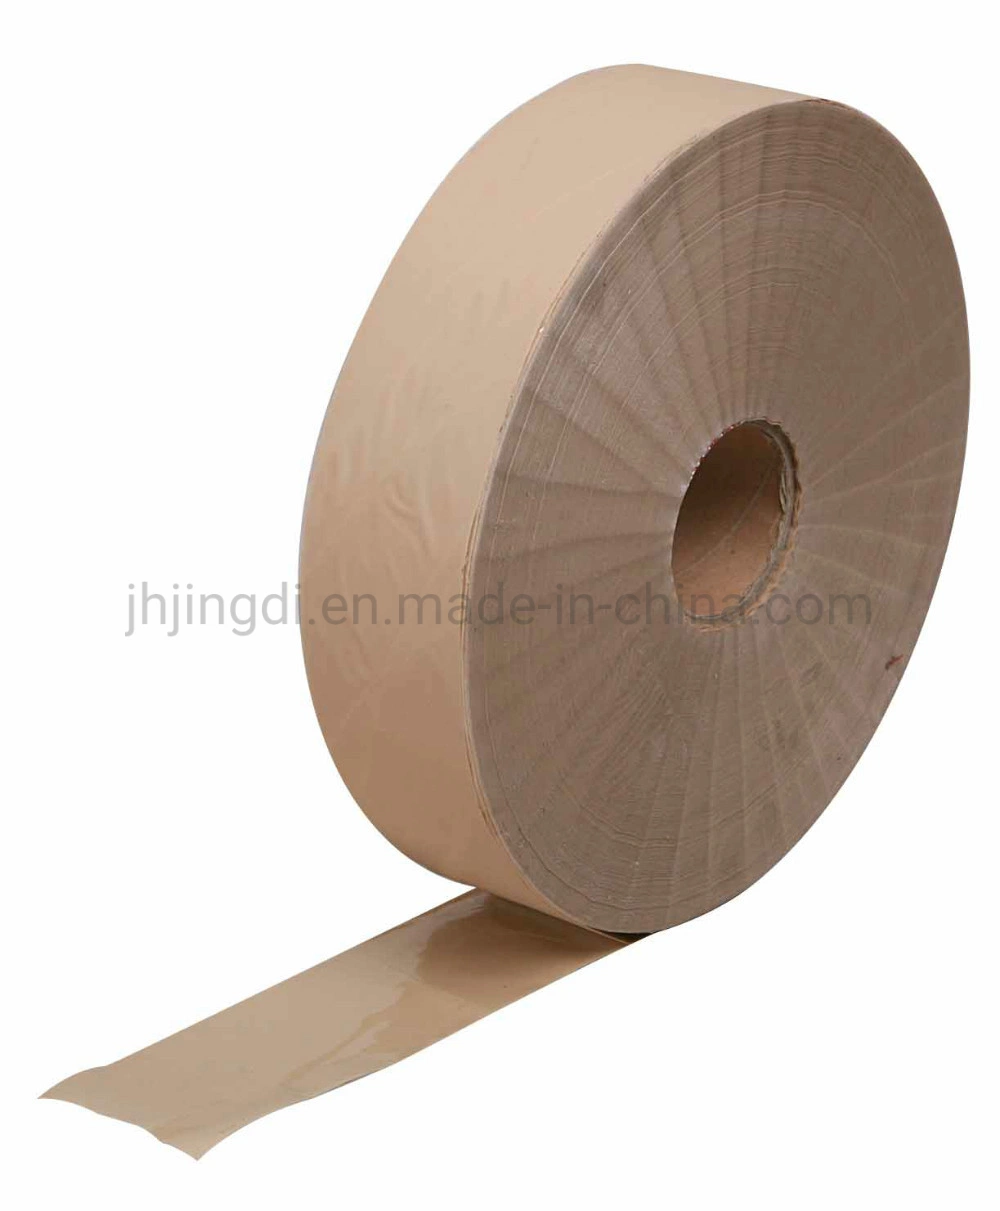 Direktfertigung Rohmaterial Klebstoffverband Jumbo-Rollen für Wunde Gips Jumbo Roll-Skin Farbe/Weiß Baumwolle/Elastischer Stoff Halbzeuge